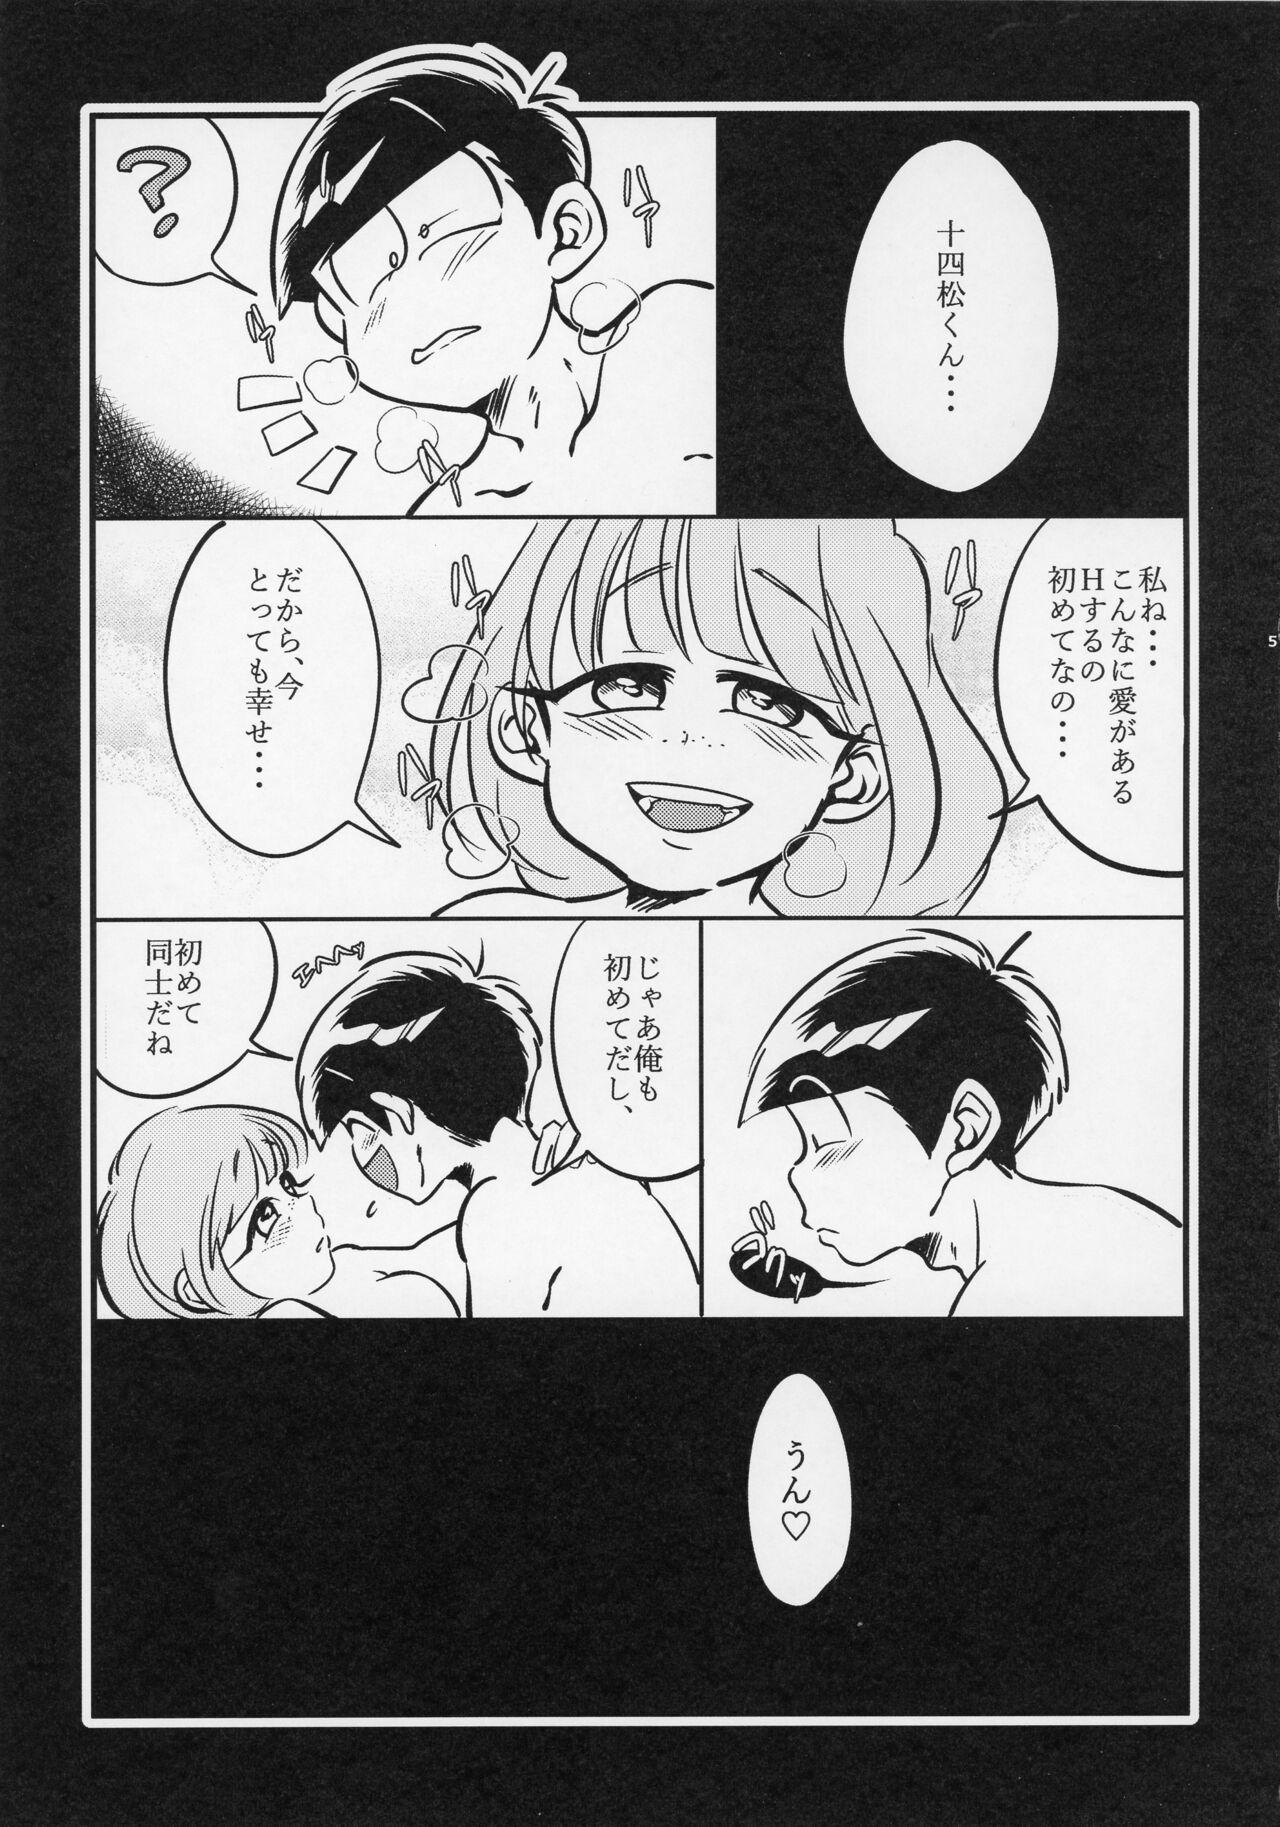 Jacking oyashirazu oni wa uchi - Osomatsu-san Rough Porn - Page 3